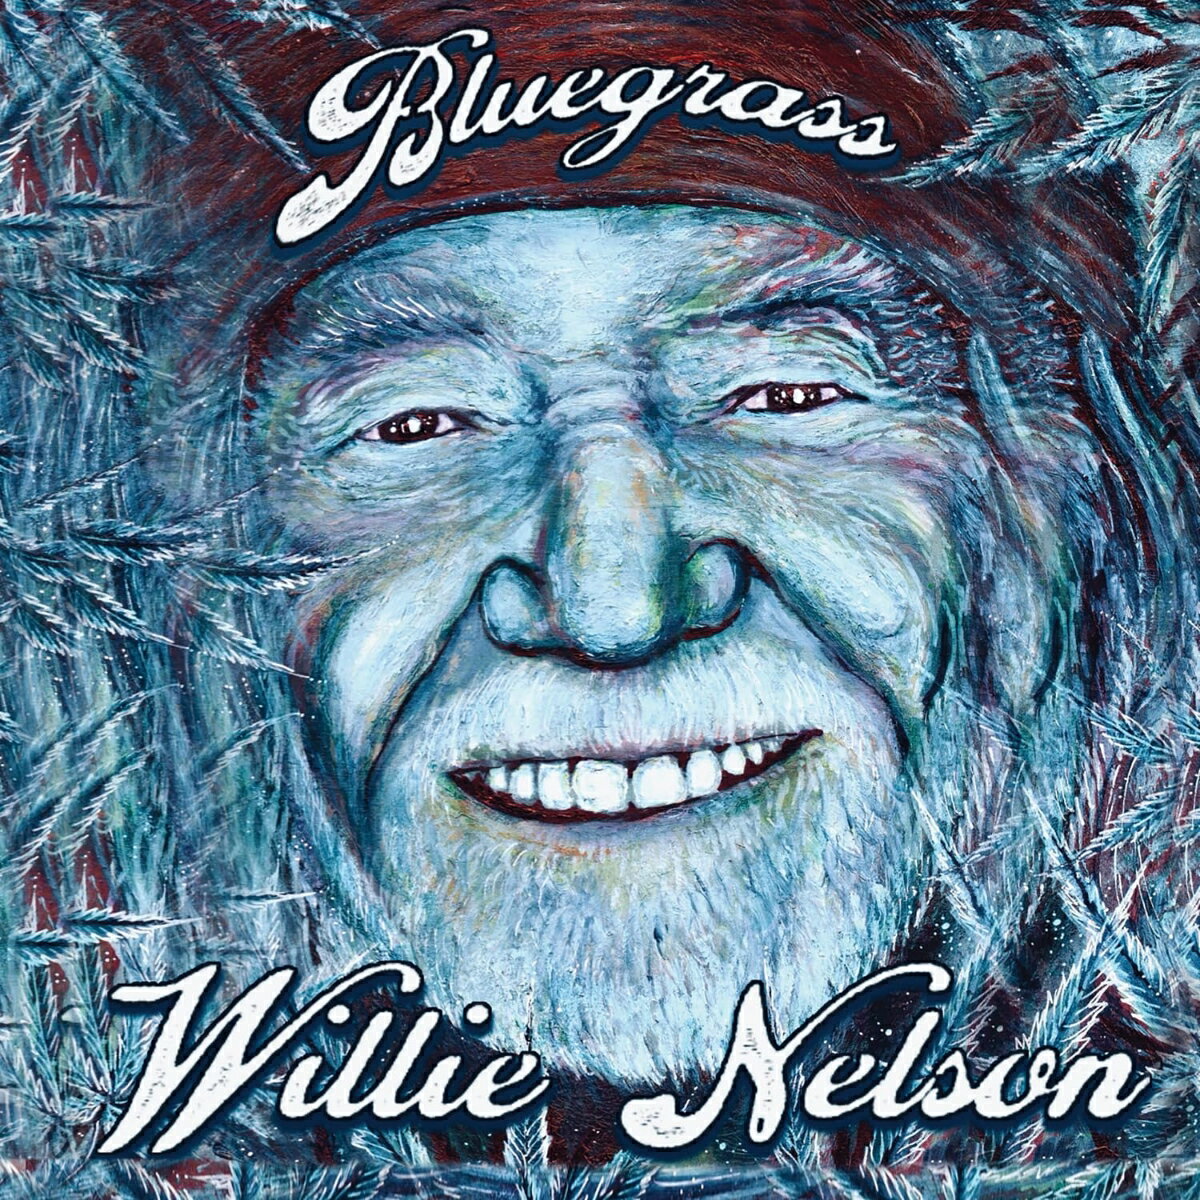 ウイリー・ネルソンの通算151枚目となる最新スタジオ・アルバム『Bluegrass』。

アパラチア山脈で生まれたストリング・バンド・ミュージックを原点としたブルーグラスへの深い想いを表現した作品であり、ブルーグラスがカントリー、フォークへと繋がった道筋を示す内容となっている。アルバムに収録される12曲は、ウィリーの自作曲の中から自身が選んだ、ファンから愛され彼自身も好んで歌ってきた作品であり、自身の古典的名曲にブルーグラス的解釈を加えている。今作も息子のマイカ・ネルソンがカバー・アートを手掛け、長年にわたってウィリーの音楽活動を支えてきたバディ・キャノンがプロデュース。ウィリー本来の味と深みのあるヴォーカルとギターは健在！

＜収録内容＞
1. No Love Around
2. Somebody Pick Up My Pieces
3. A Good Hearted Woman
4. Sad Songs and Waltzes
5. Home Motel
6. You Left Me A Long Long Time Ago
7. Yesterday's Wine
8. Bloody Mary Morning
9. Slow Down Old World
10. Still Is Still Moving To Me
11. On the Road Again
12. Man With the Blues